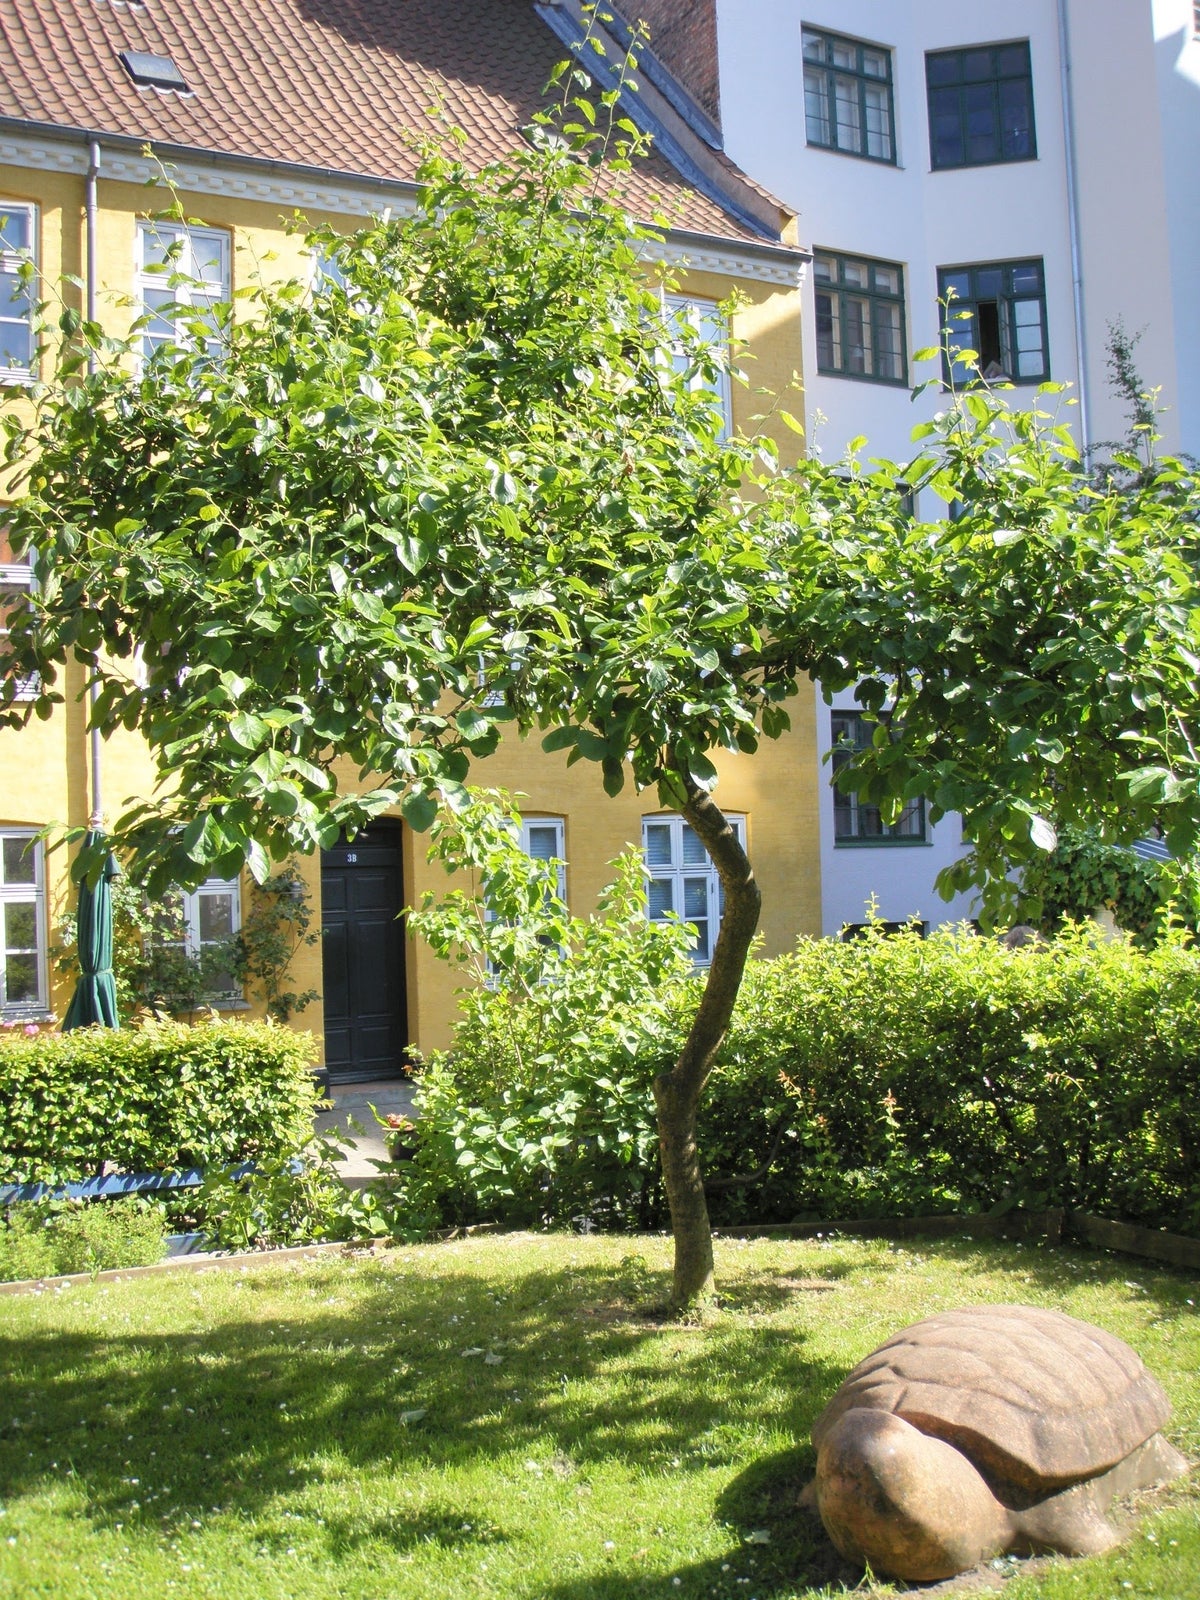 Christianshavn, lejlighed udlejes i juni og juli.